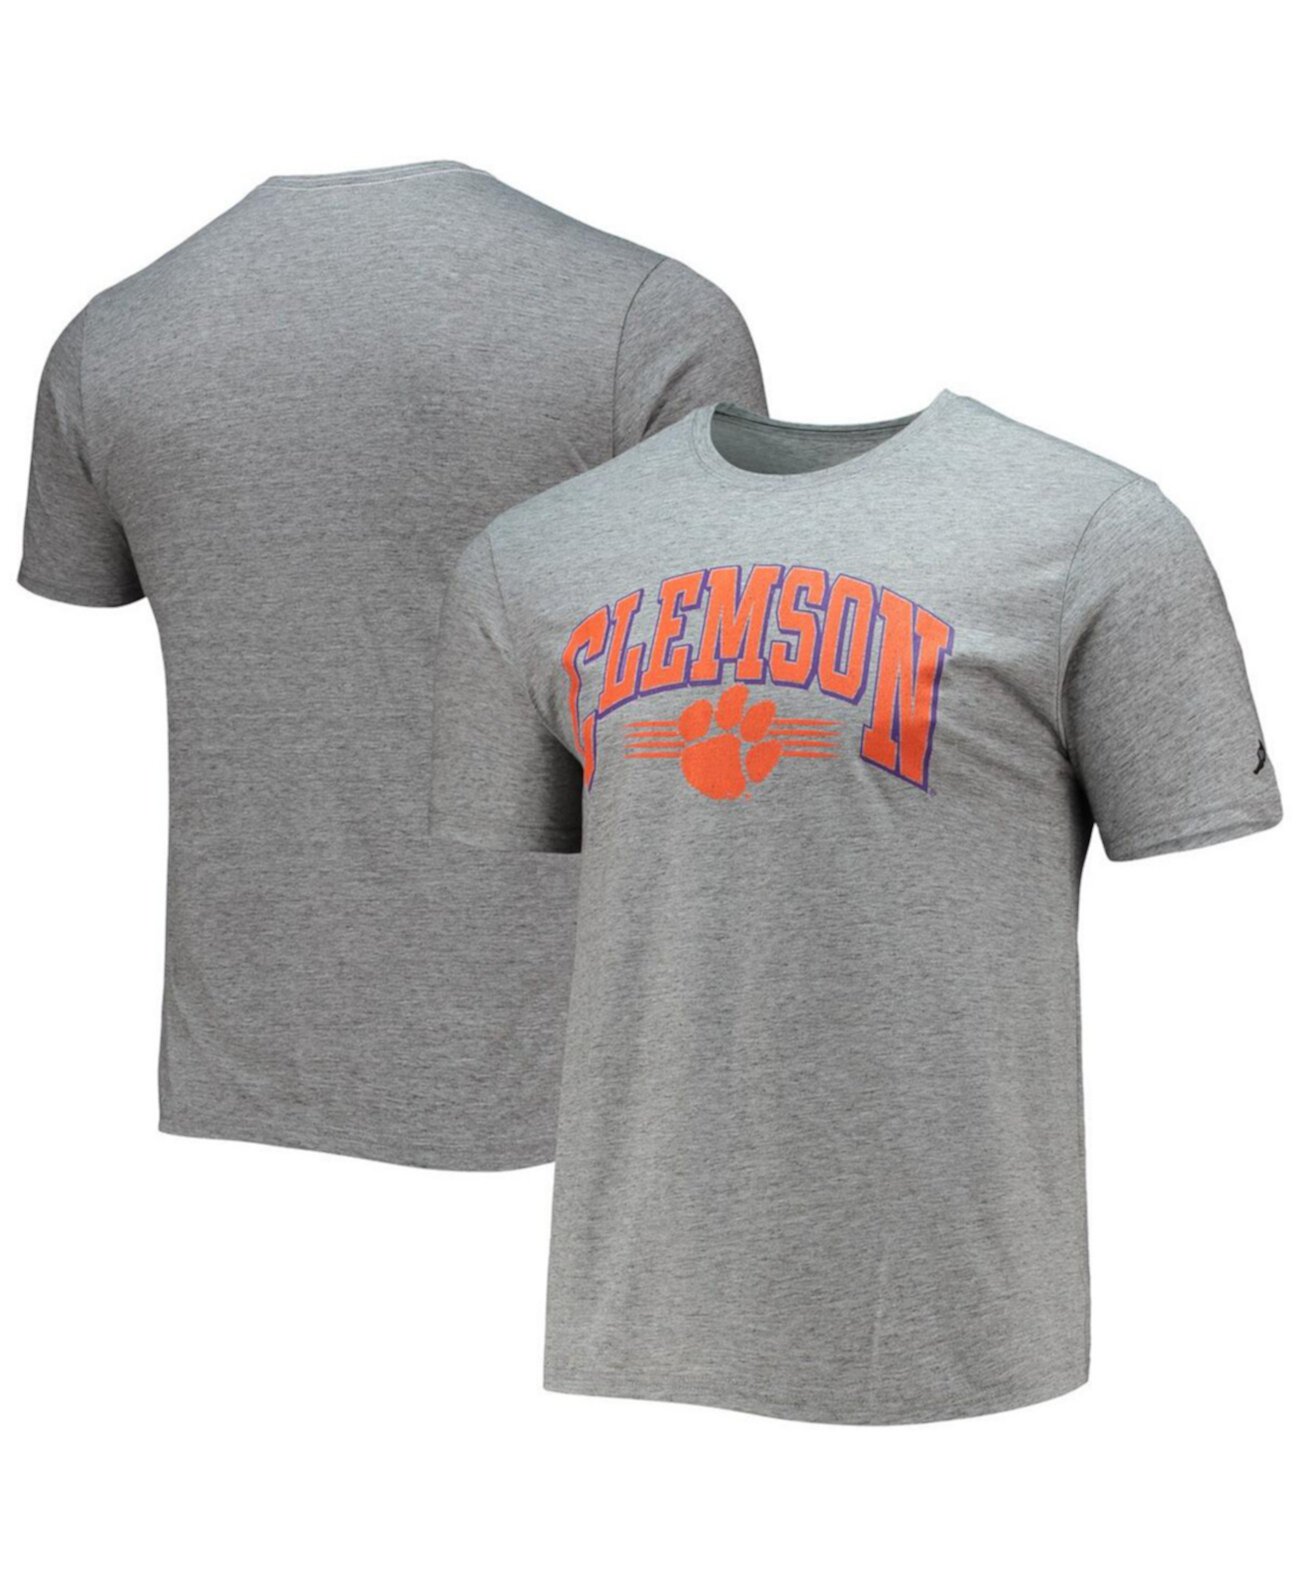 Мужская серая футболка Clemson Tigers Upperclassman Reclaim из переработанного джерси с меланжевым принтом League Collegiate Wear